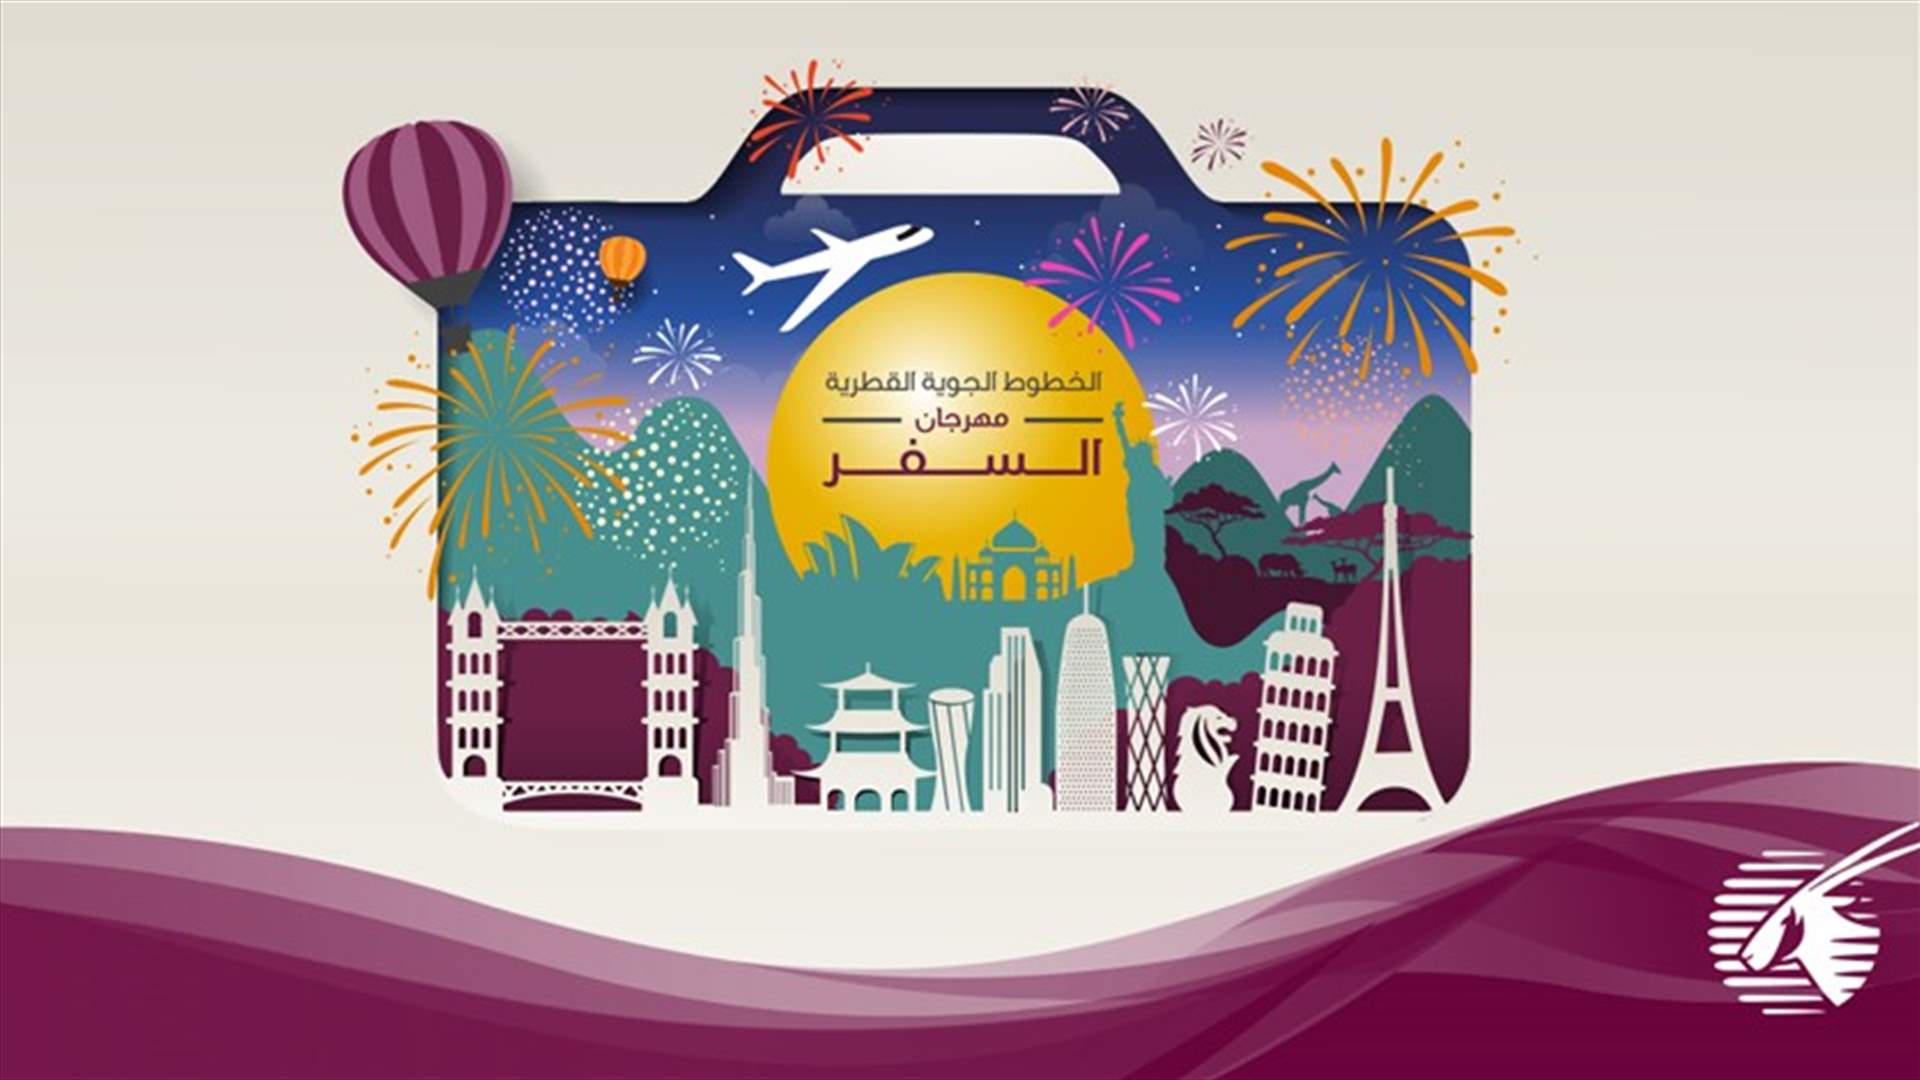 الخطوط الجوية القطرية تمنح المسافرين فرصة استكشاف العالم